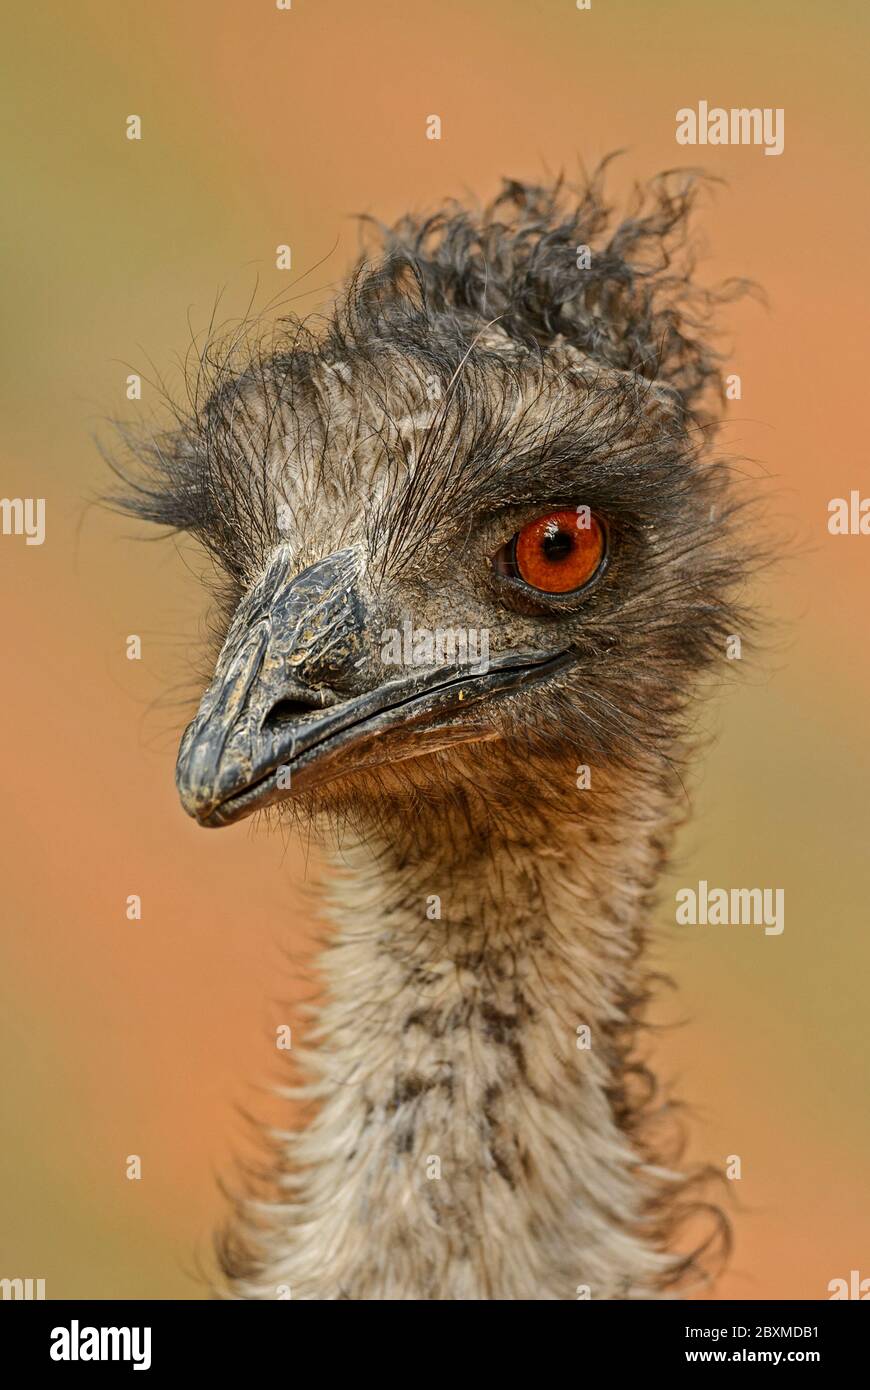 Émeu commun - Dromaius novaehollandiae, portrait d'un grand oiseau populaire de terre de savanes et de buissons australiens, Australie. Banque D'Images